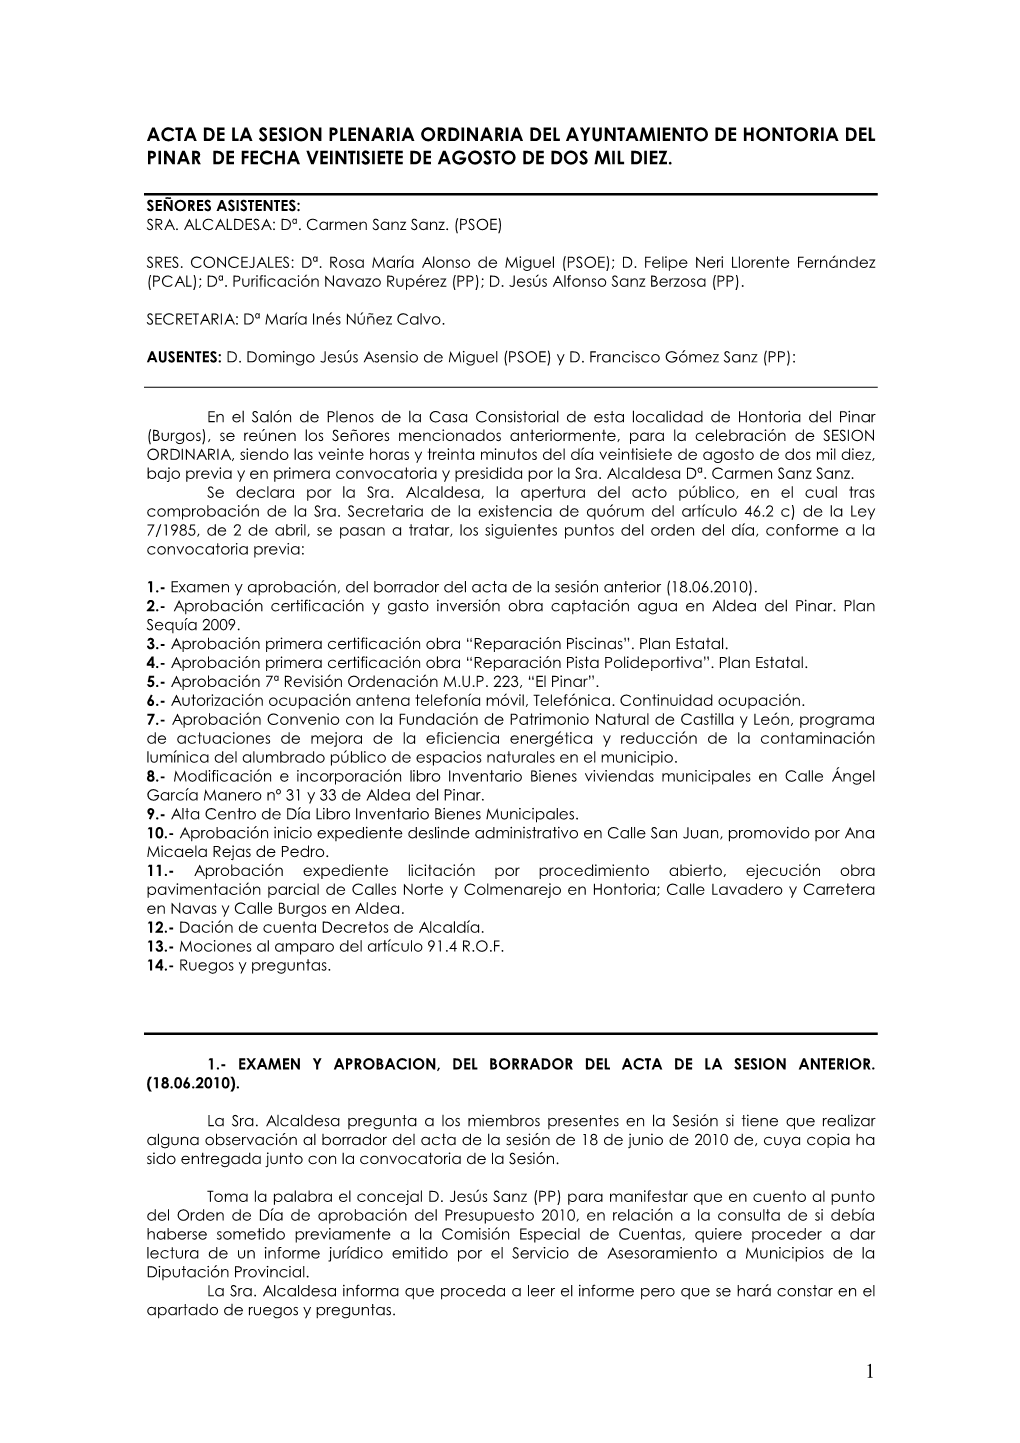 Acta De La Sesion Plenaria Ordinaria Del Ayuntamiento De Hontoria Del Pinar De Fecha Veintisiete De Agosto De Dos Mil Diez